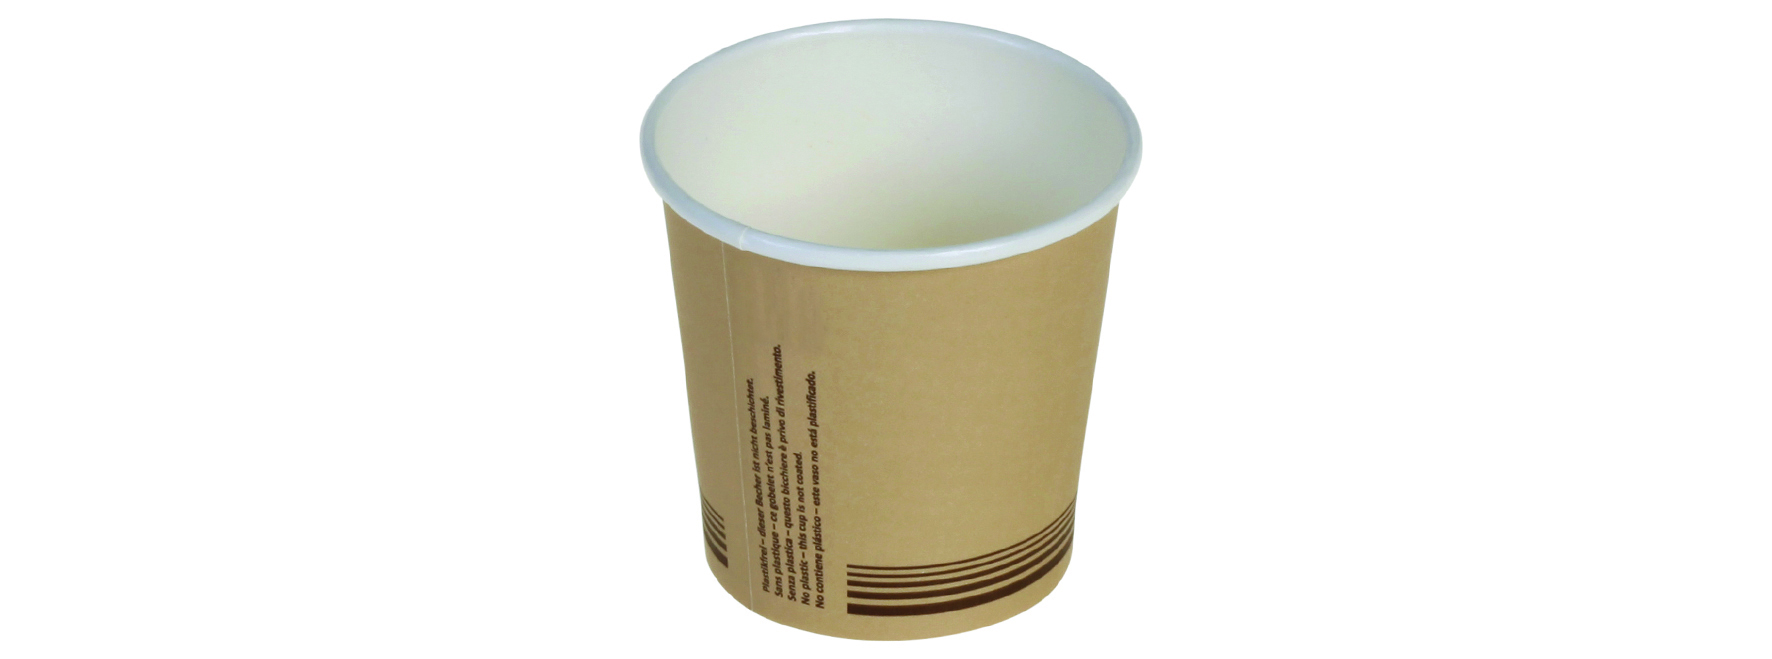 Pacovis Kaffeebecher 0.7dl, braun, Ø56mm, nicht Plastik-laminiert